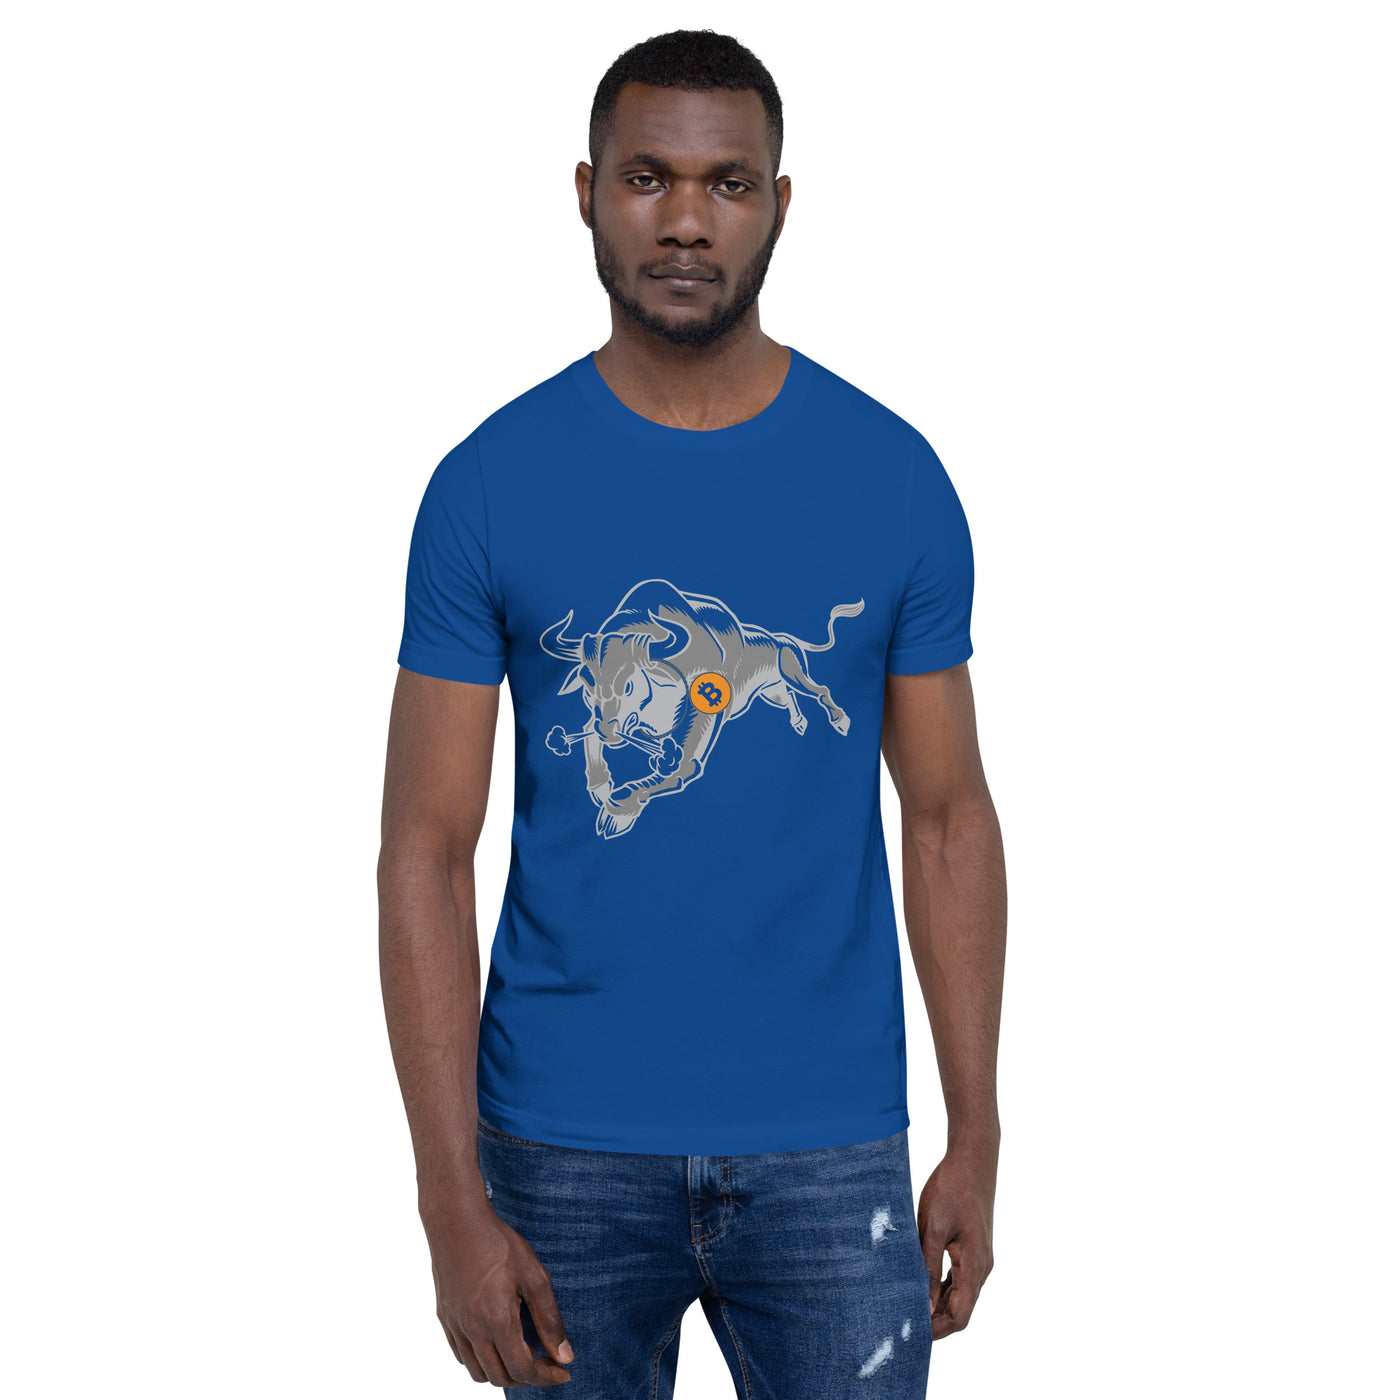 Strong Bitcoin Bull Unisex t-shirt